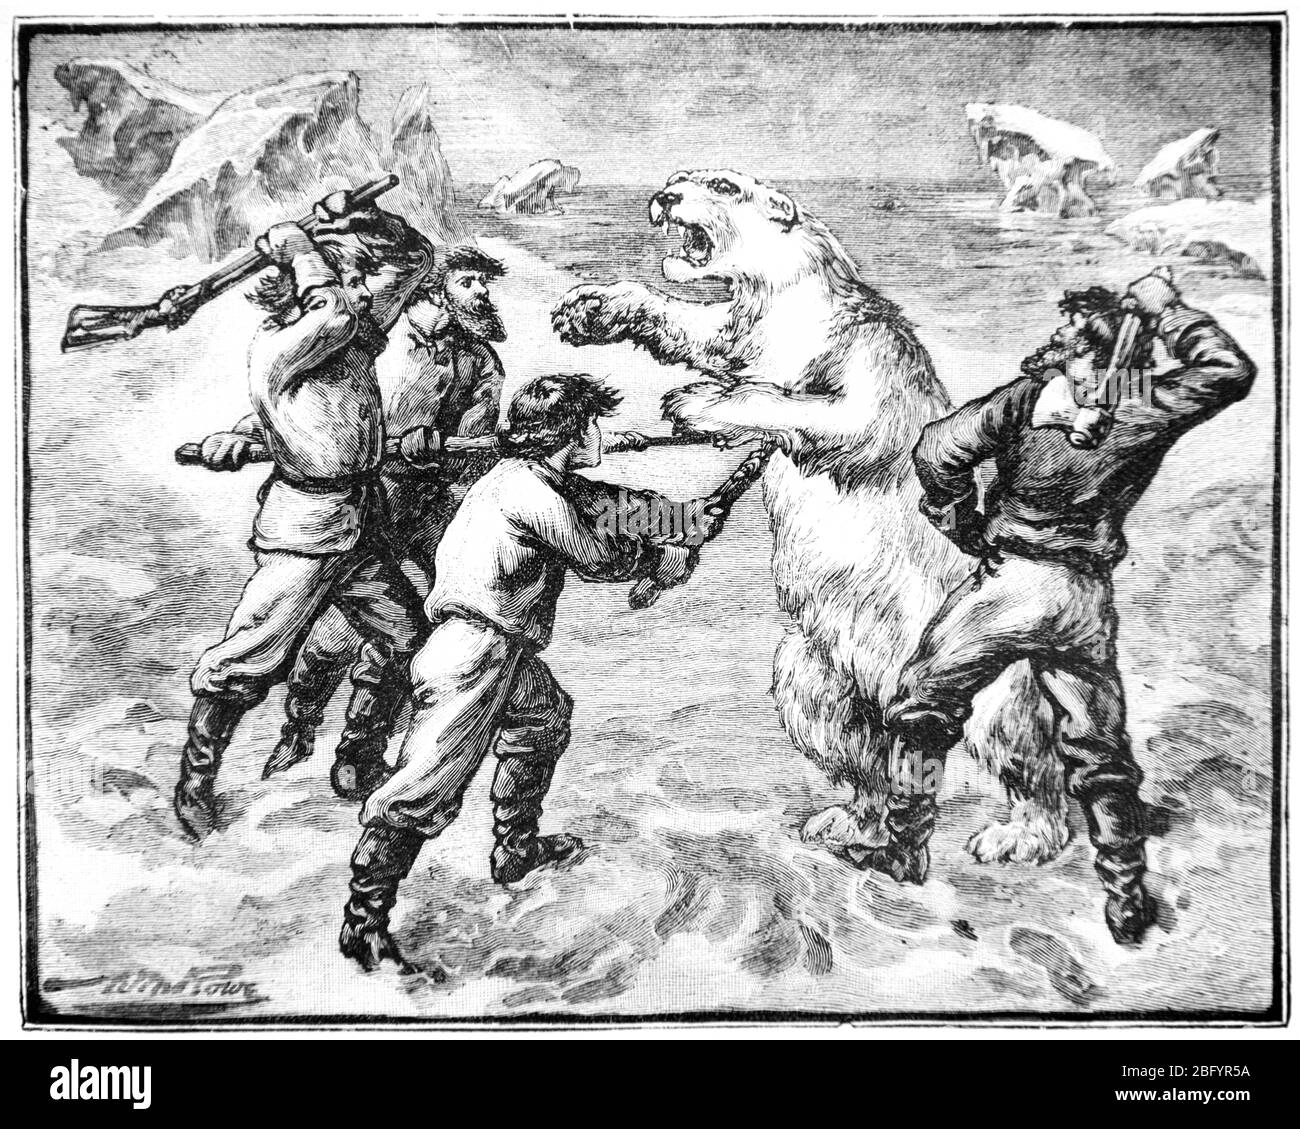 Ours polaire, Ursus maritimus, attaquant des hommes ou des humains dans l'Arctique. Vintage ou ancienne illustration ou gravure 1890 Banque D'Images